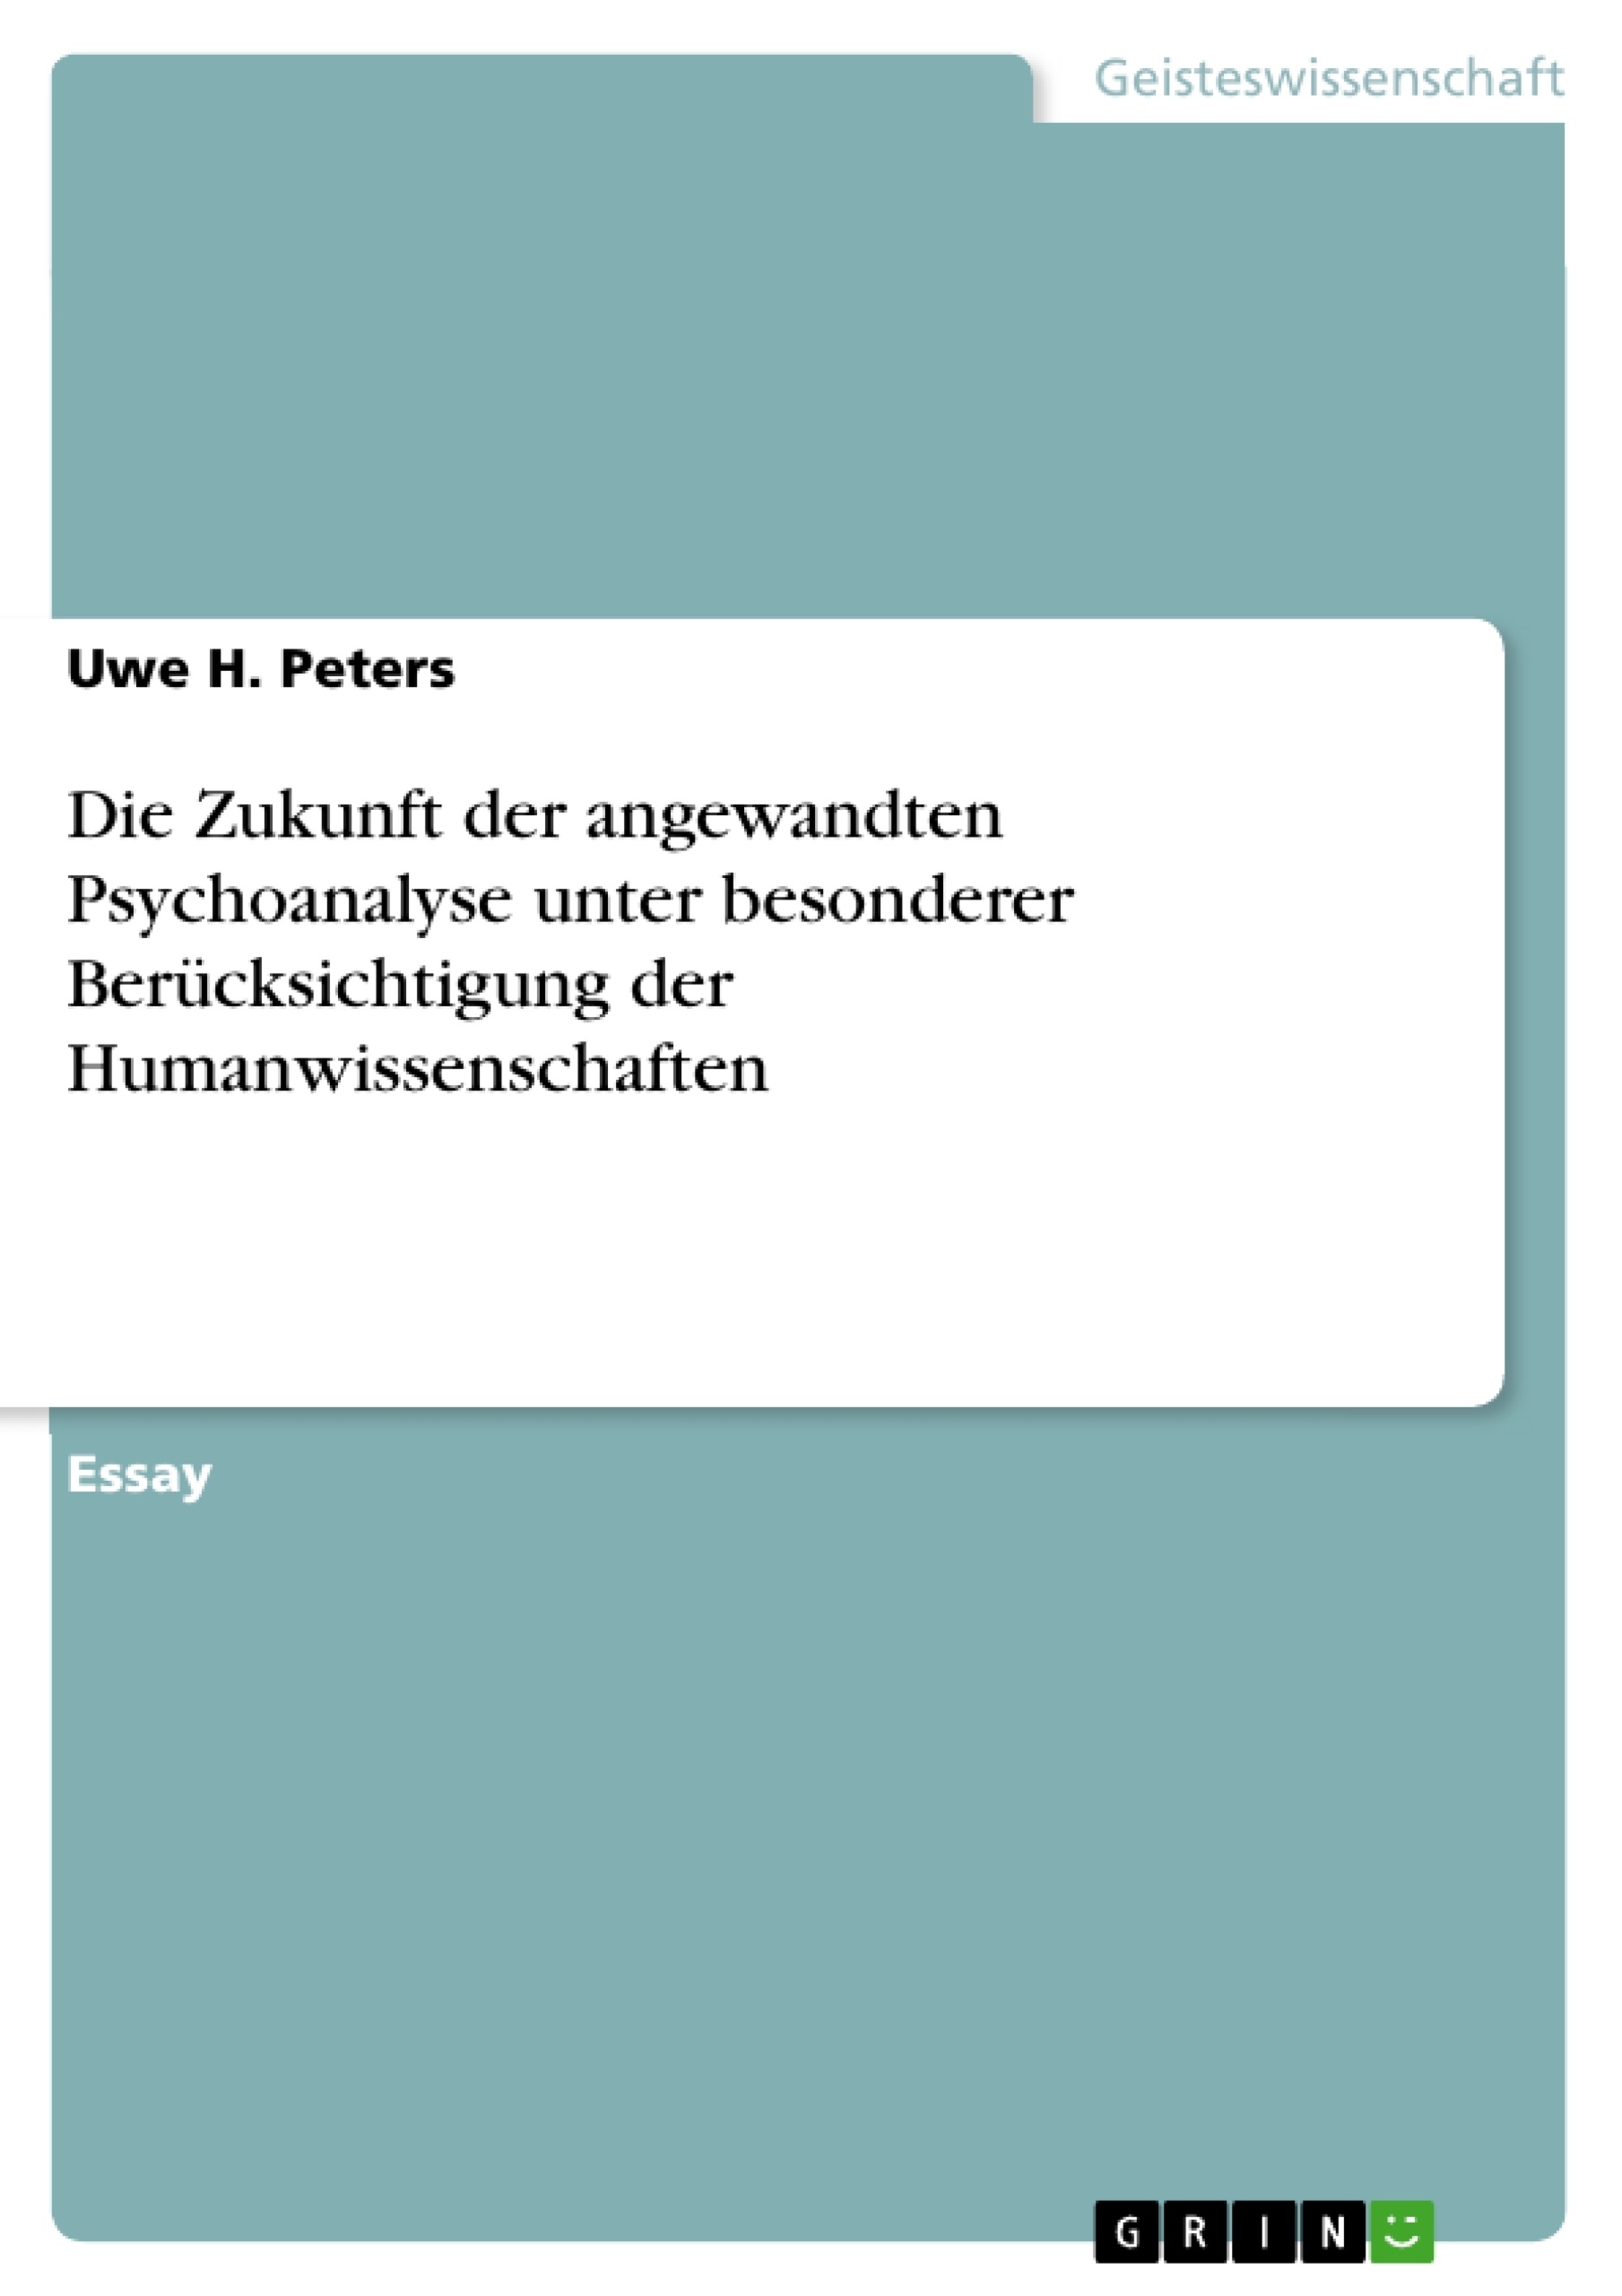 Title: Die Zukunft der angewandten Psychoanalyse unter besonderer Berücksichtigung der Humanwissenschaften